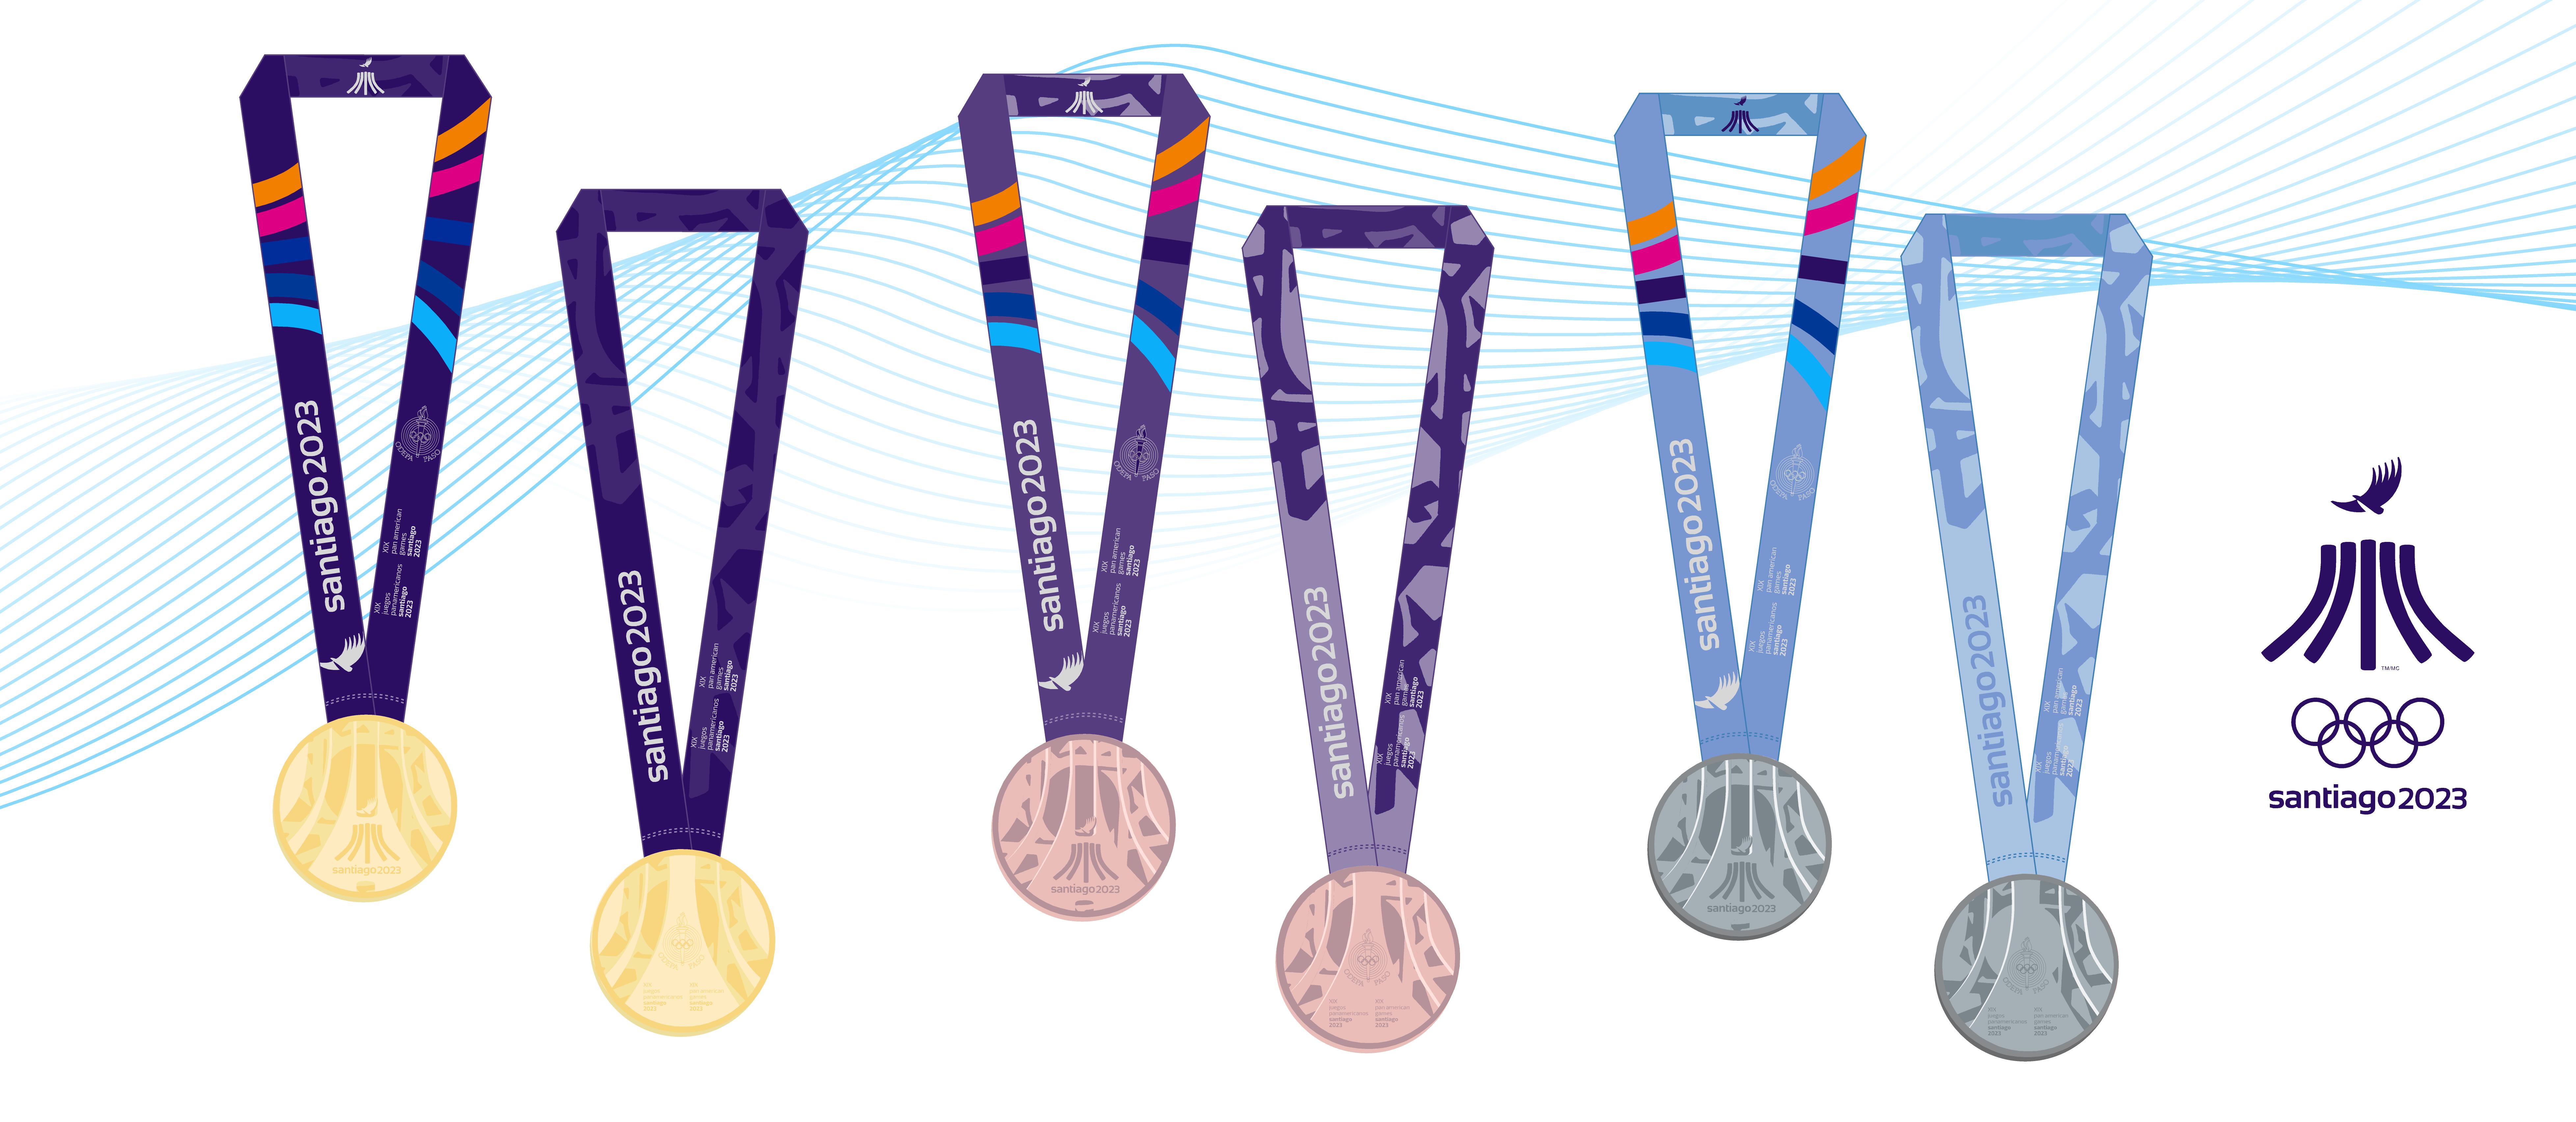 XIX Juegos Panamericanos de Santiago 2023 – Medallas